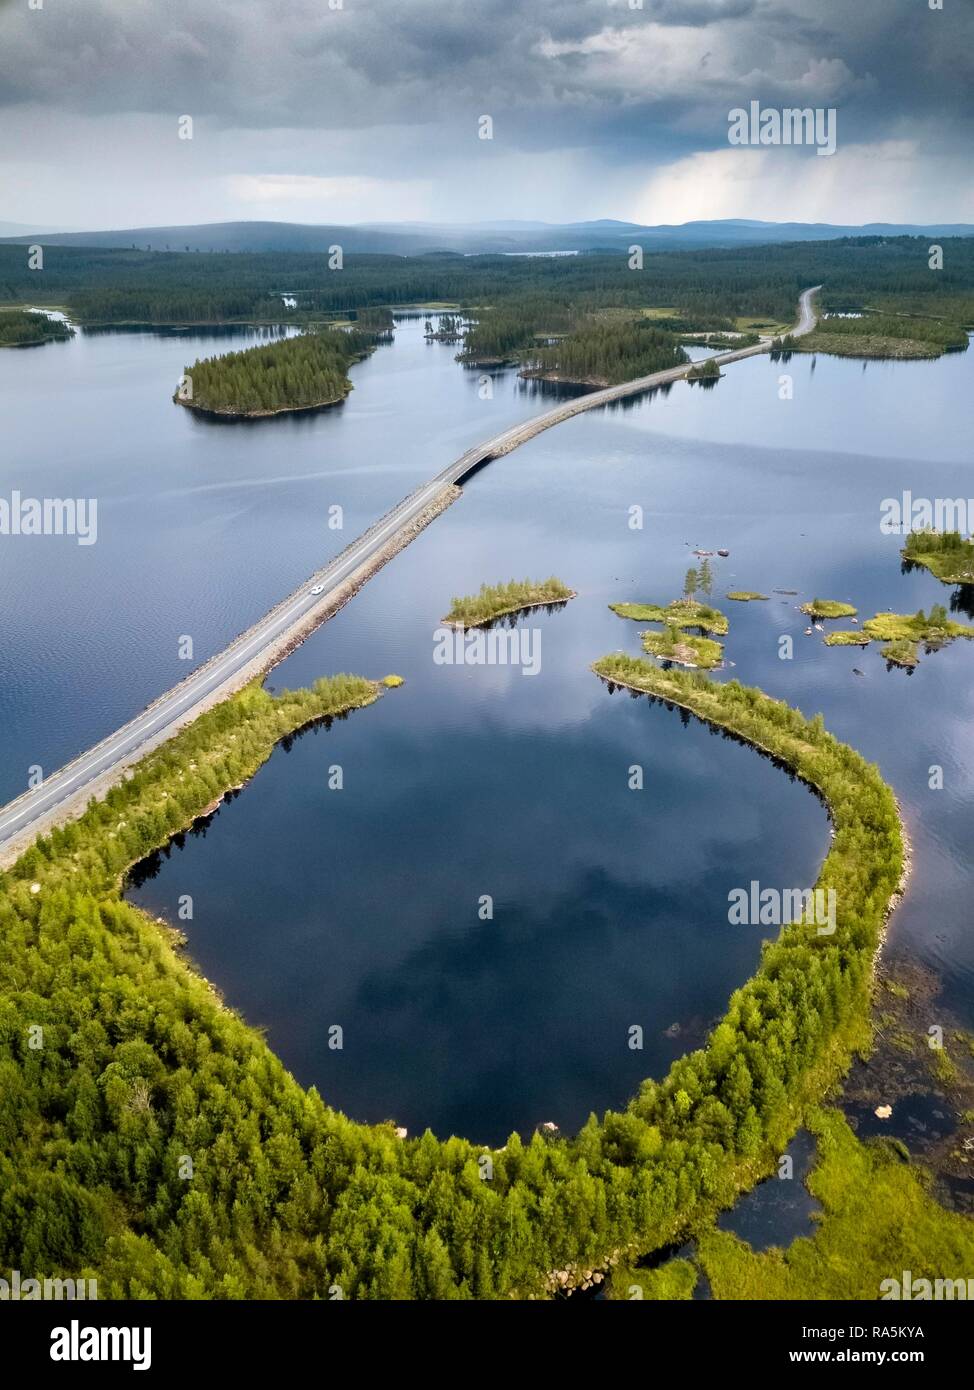 Fuchi shot, avvolgimento strada scorre attraverso il lago paesaggio, boreale, arctic conifere su piccole isole, Frederika, Västerbottens Län Foto Stock